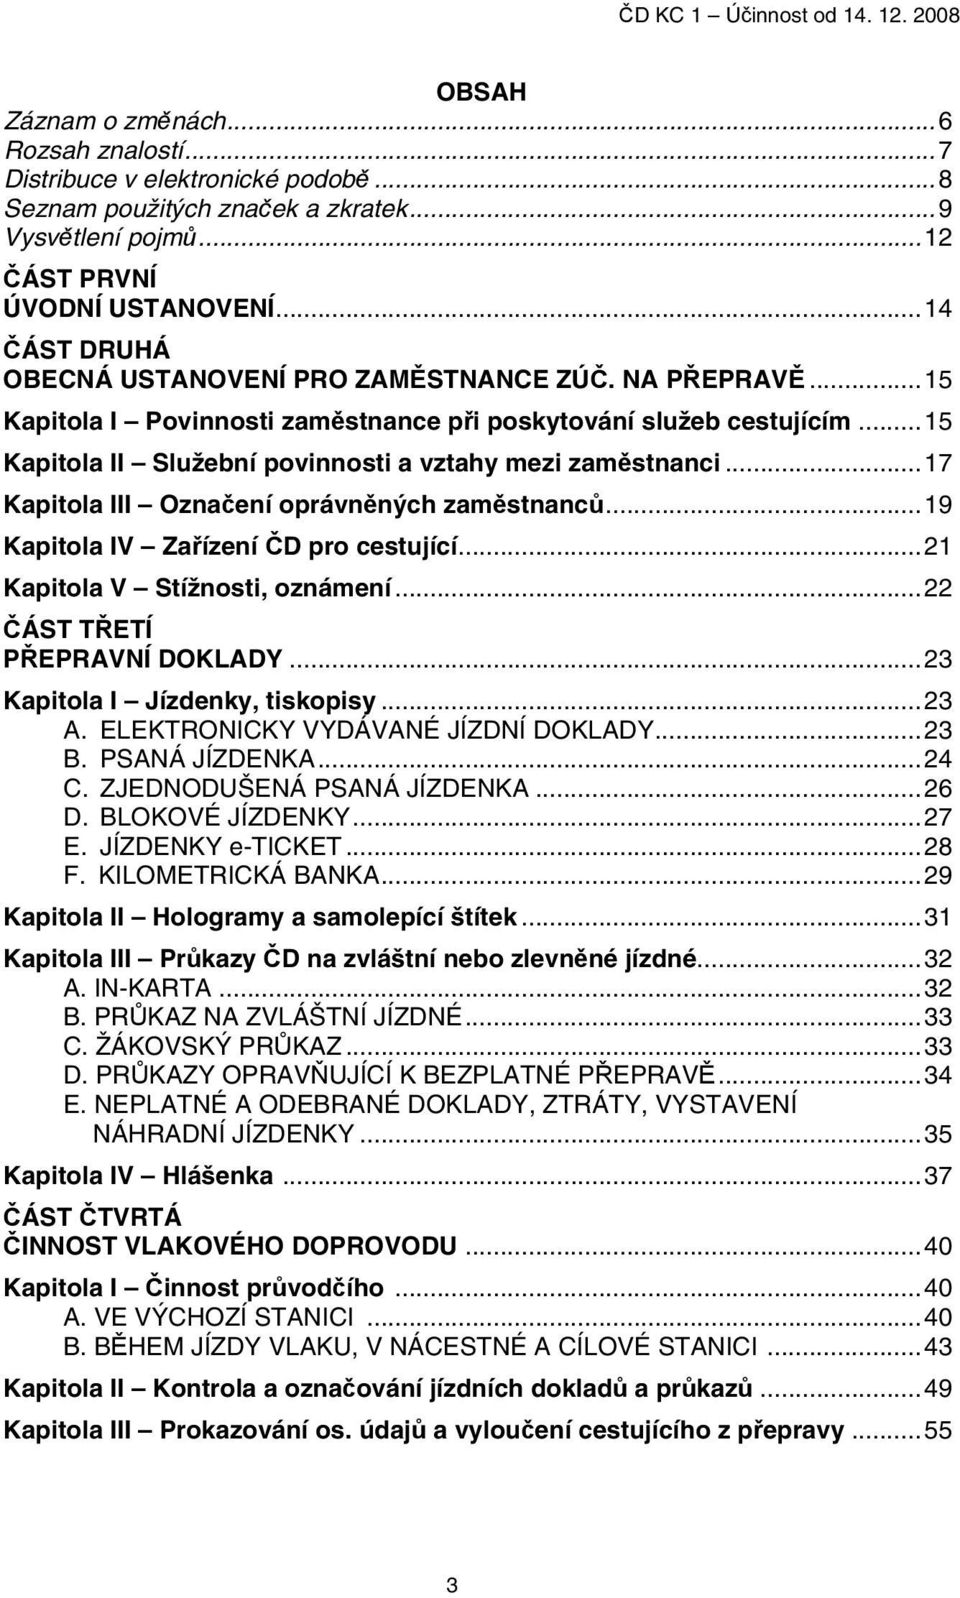 České dráhy, a.s. ČD KC 1. Předpis. pro činnosti ve vlacích ve vztahu k  osobní dopravě a přepravě. Úroveň přístupu C - PDF Stažení zdarma